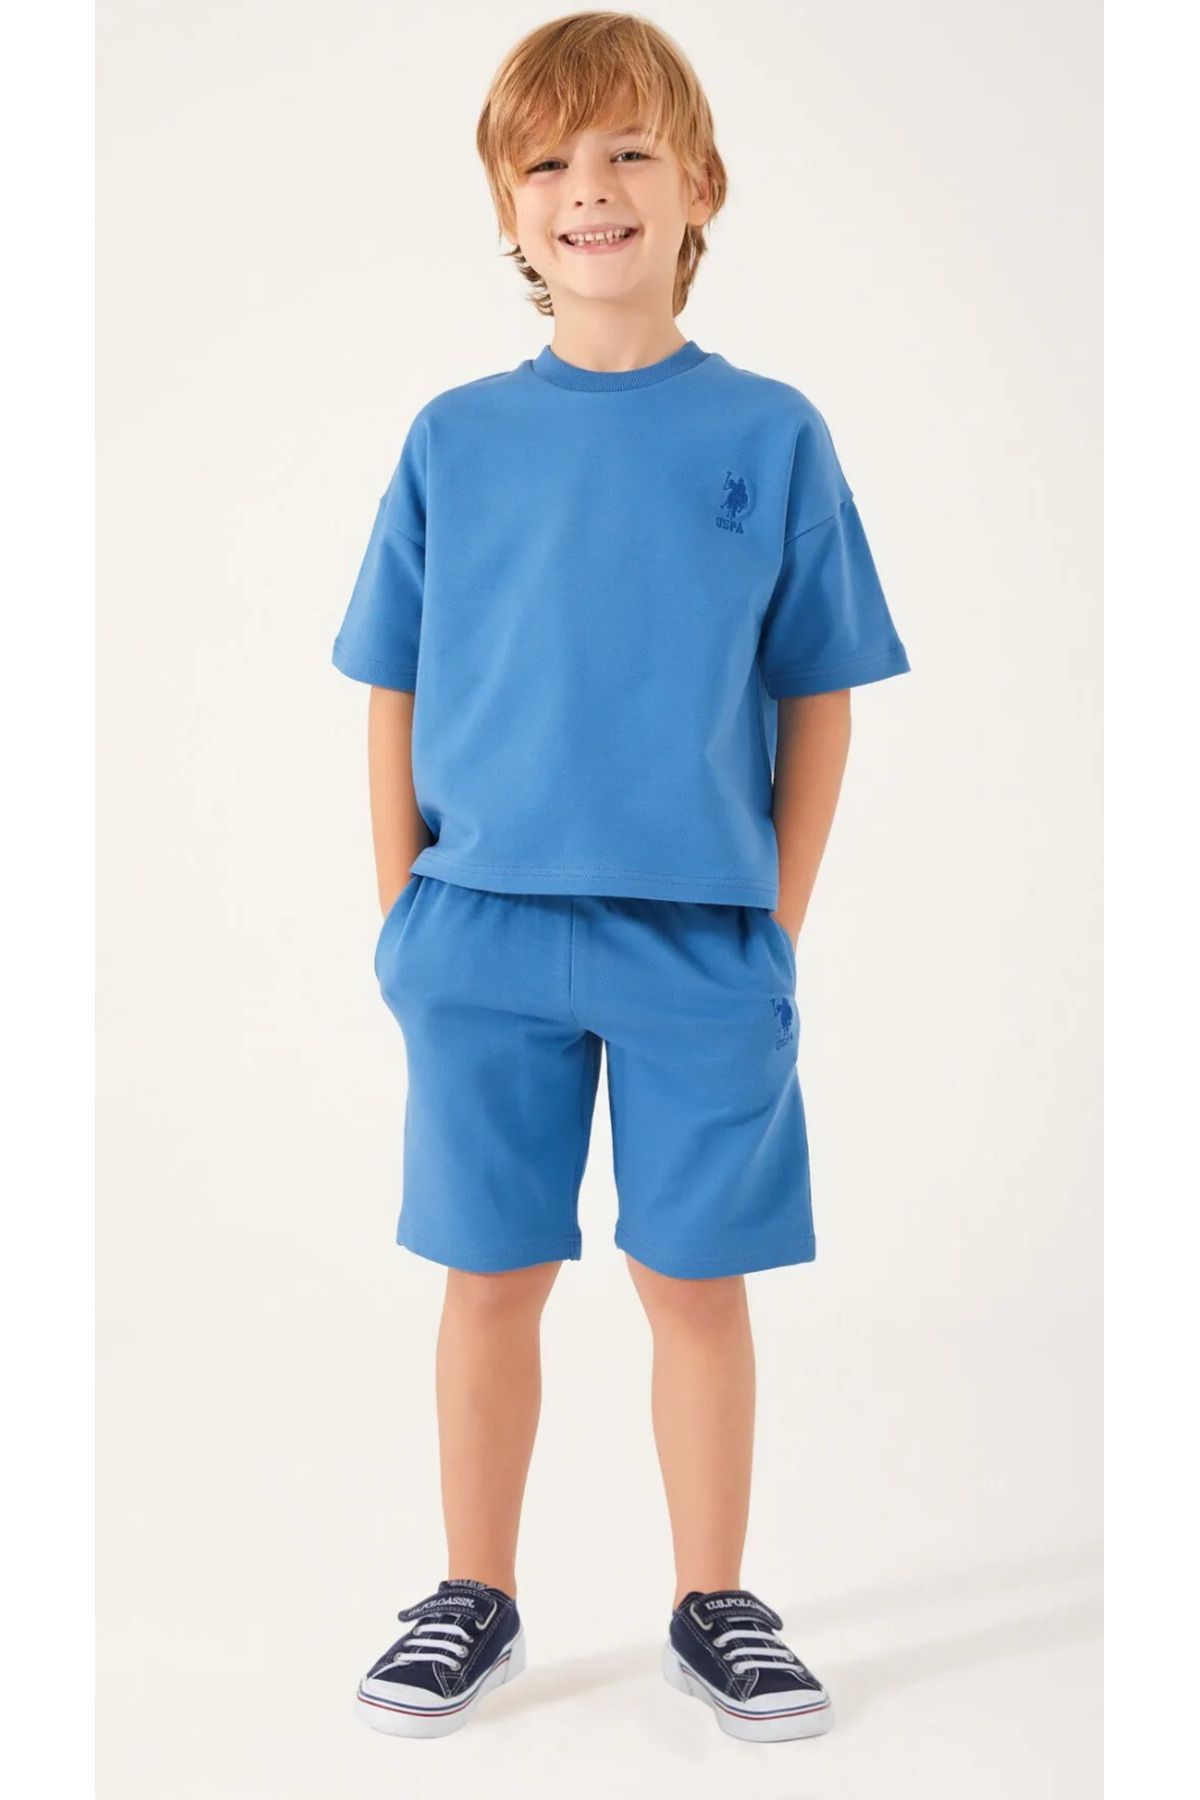 U.S. Polo Assn. Erkek Çocuk, USPA, Lisanslı, Petrol Mavisi, % 100 Pamuk T-shirt Bermuda Takım